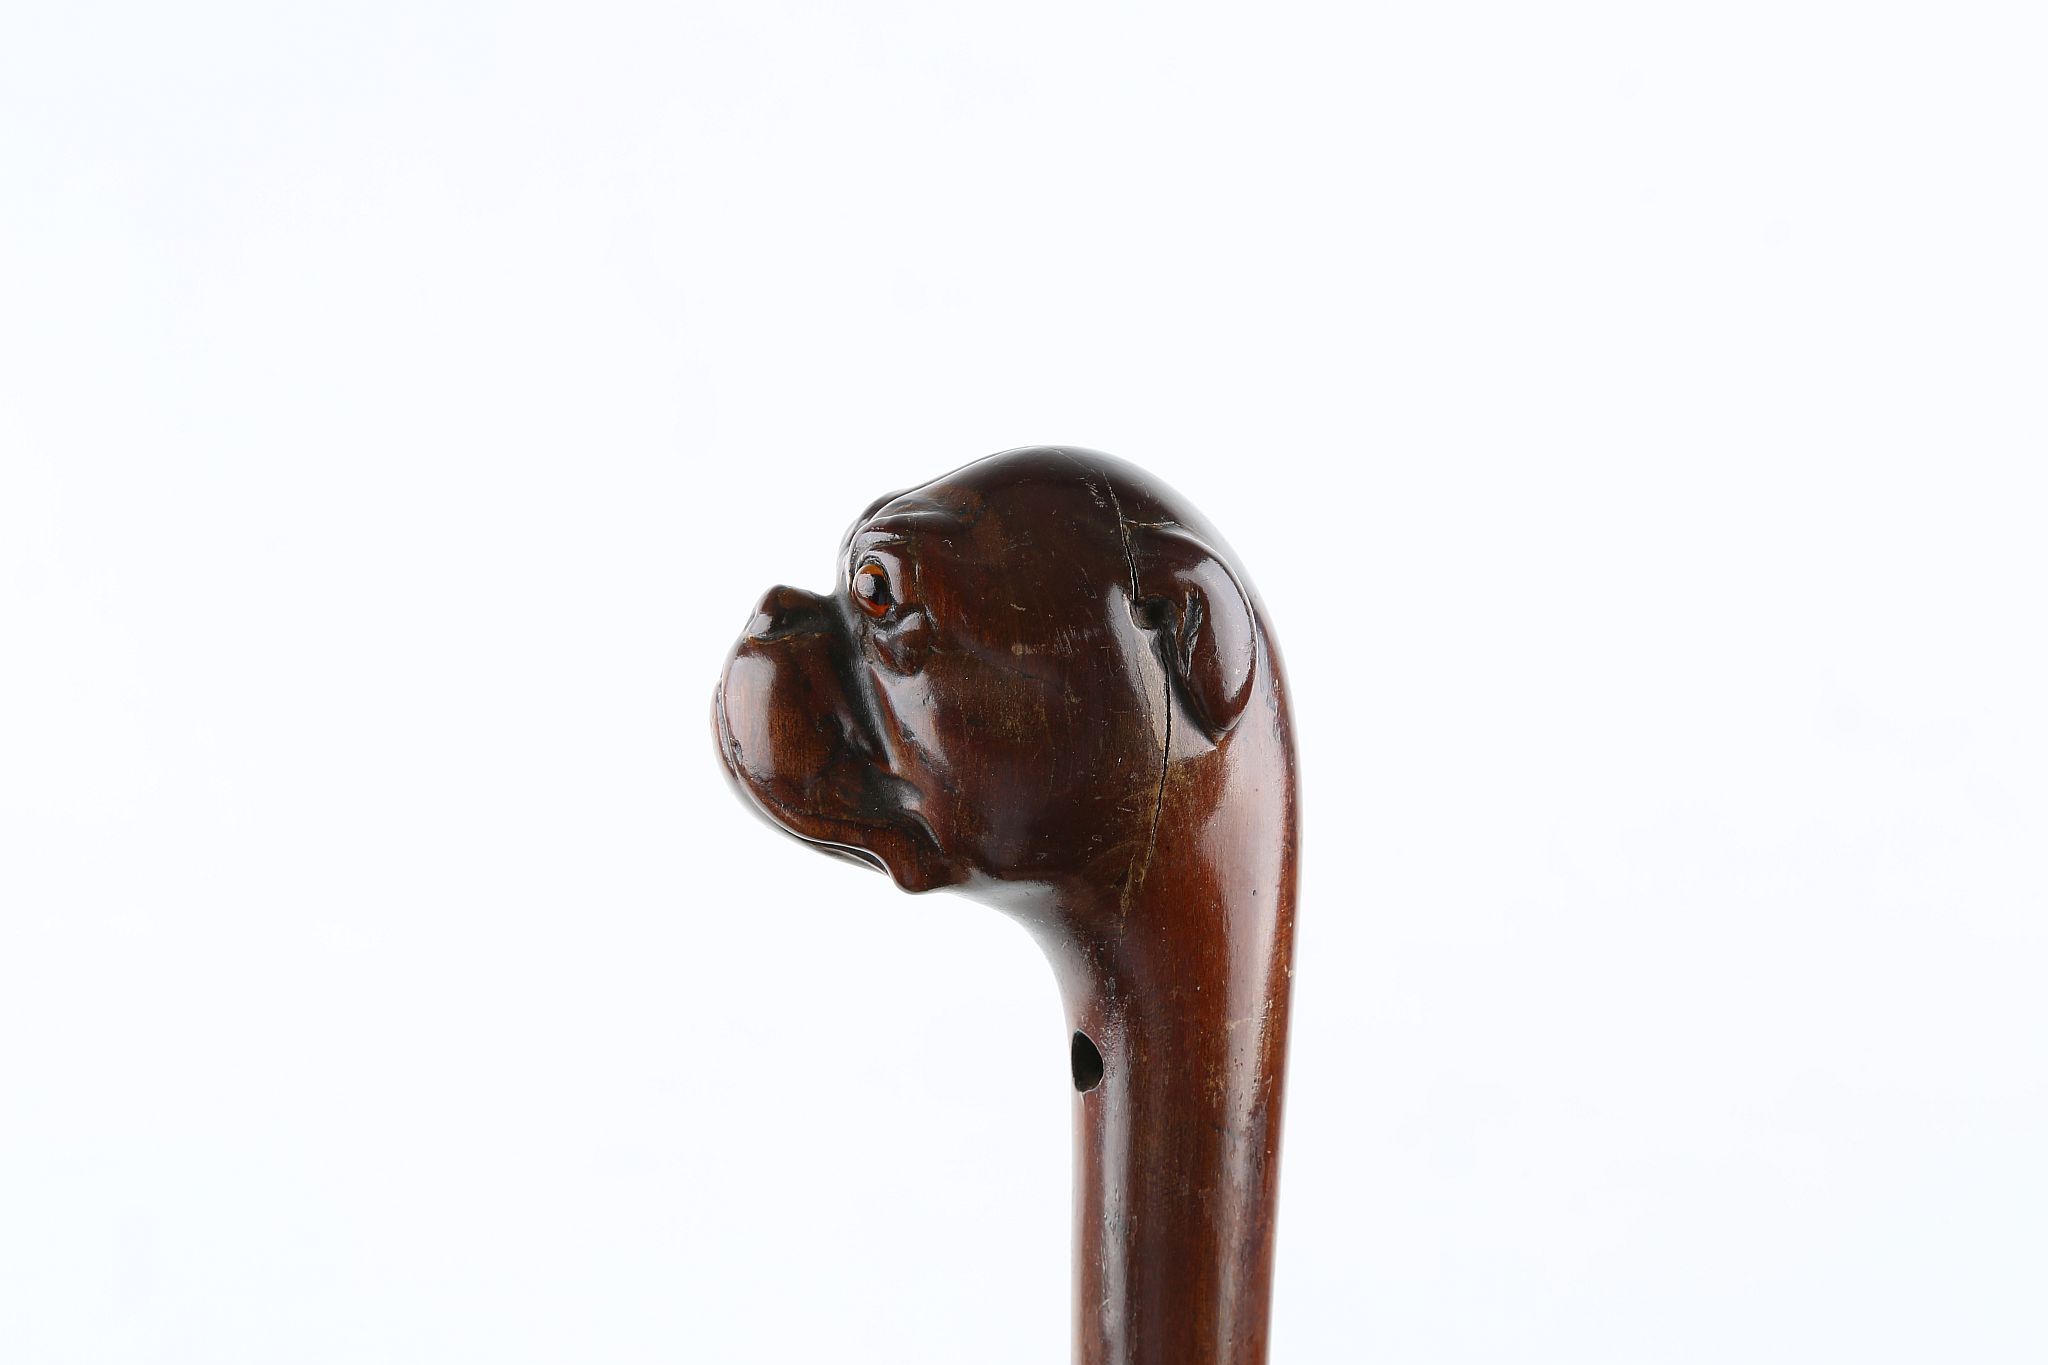 A ONE PIECE FOLK ART CANE, bulldog handle with glass eyes, 34 inches (87cm).